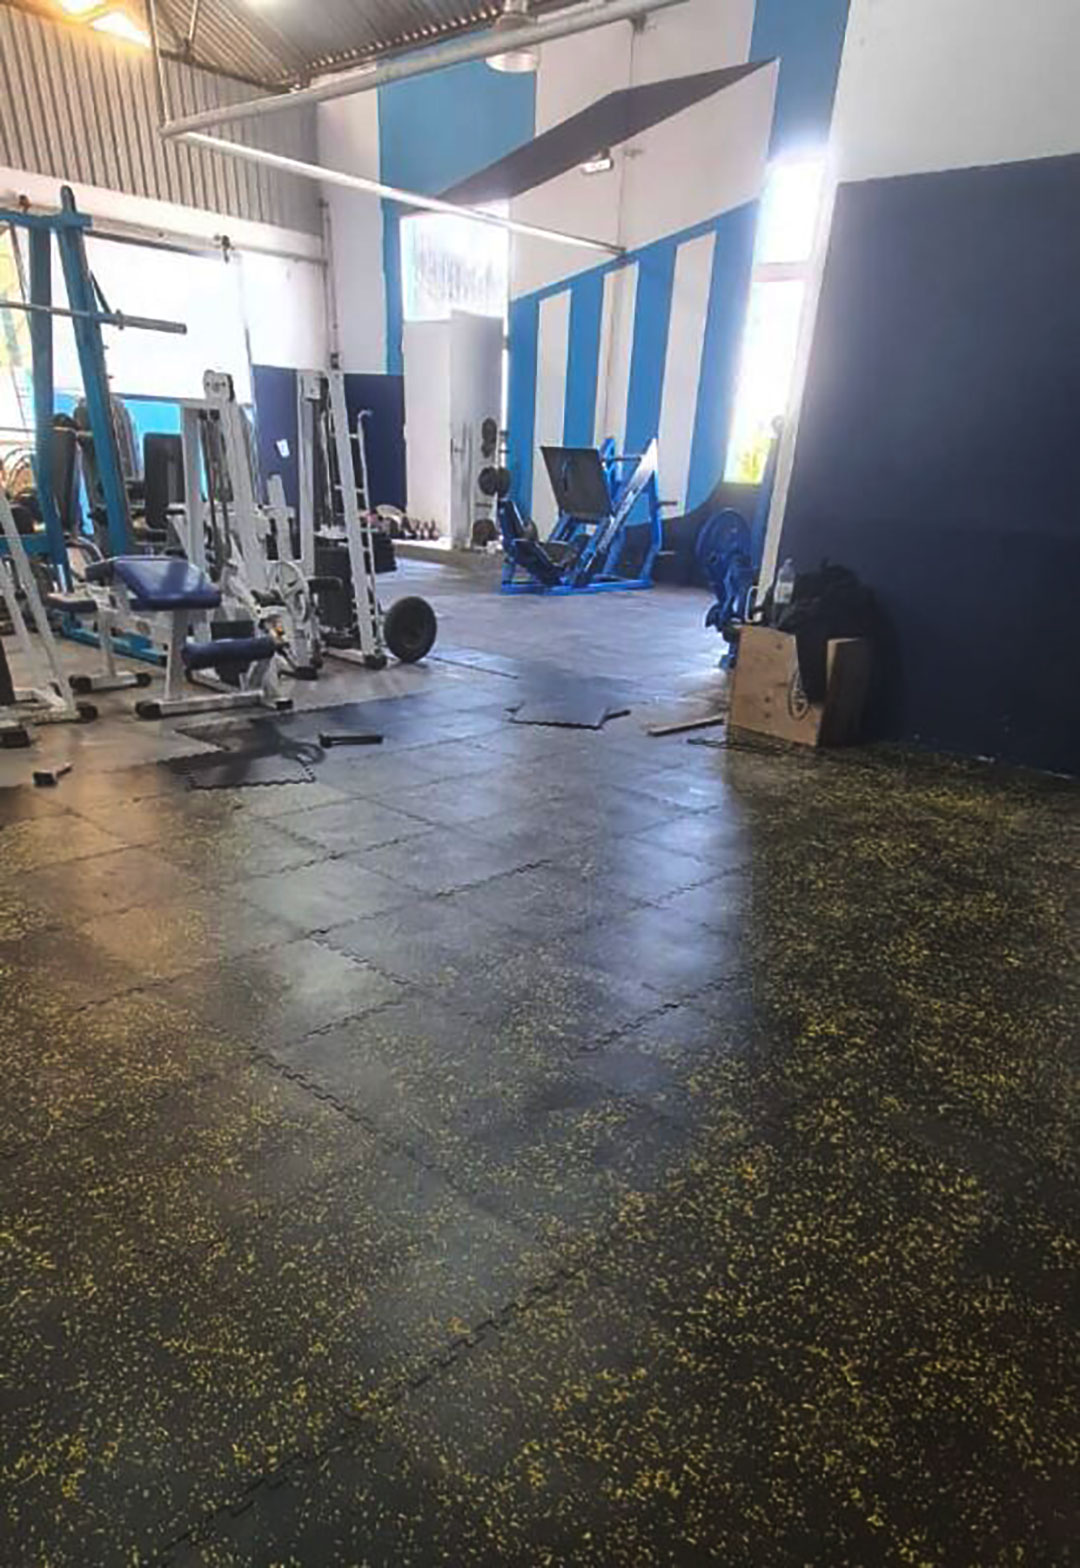 Así quedó el gimnasio después de la colocación del piso donado por Chiquito (Foto: Racing de Alma)